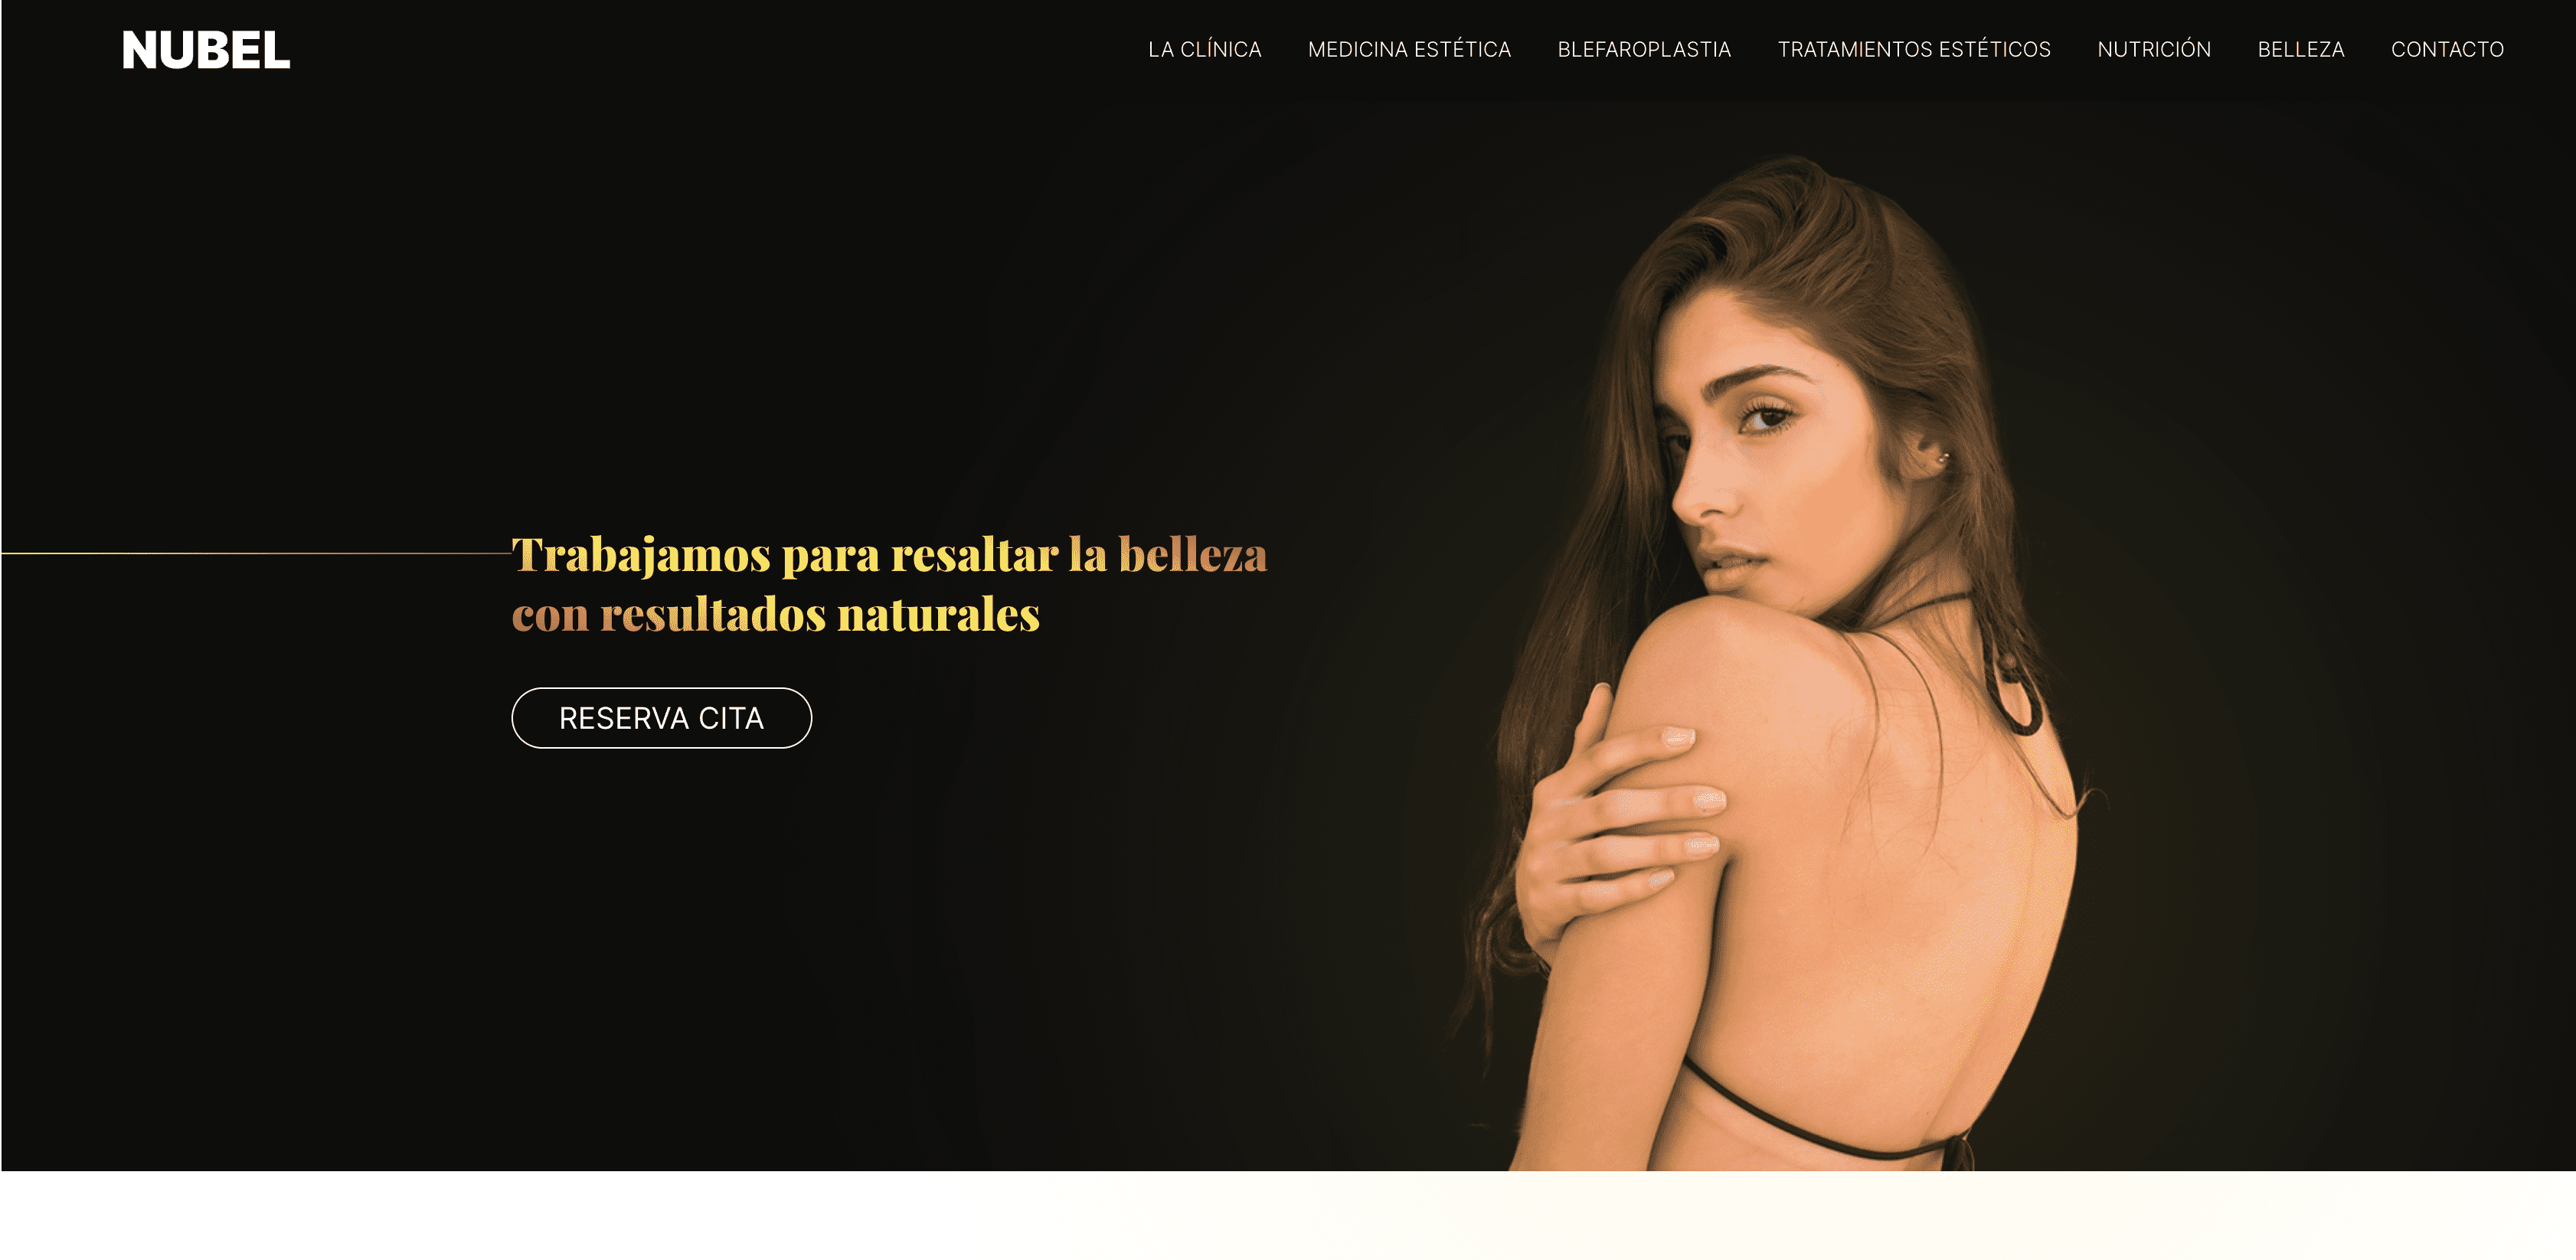 web medicina estetica valencia